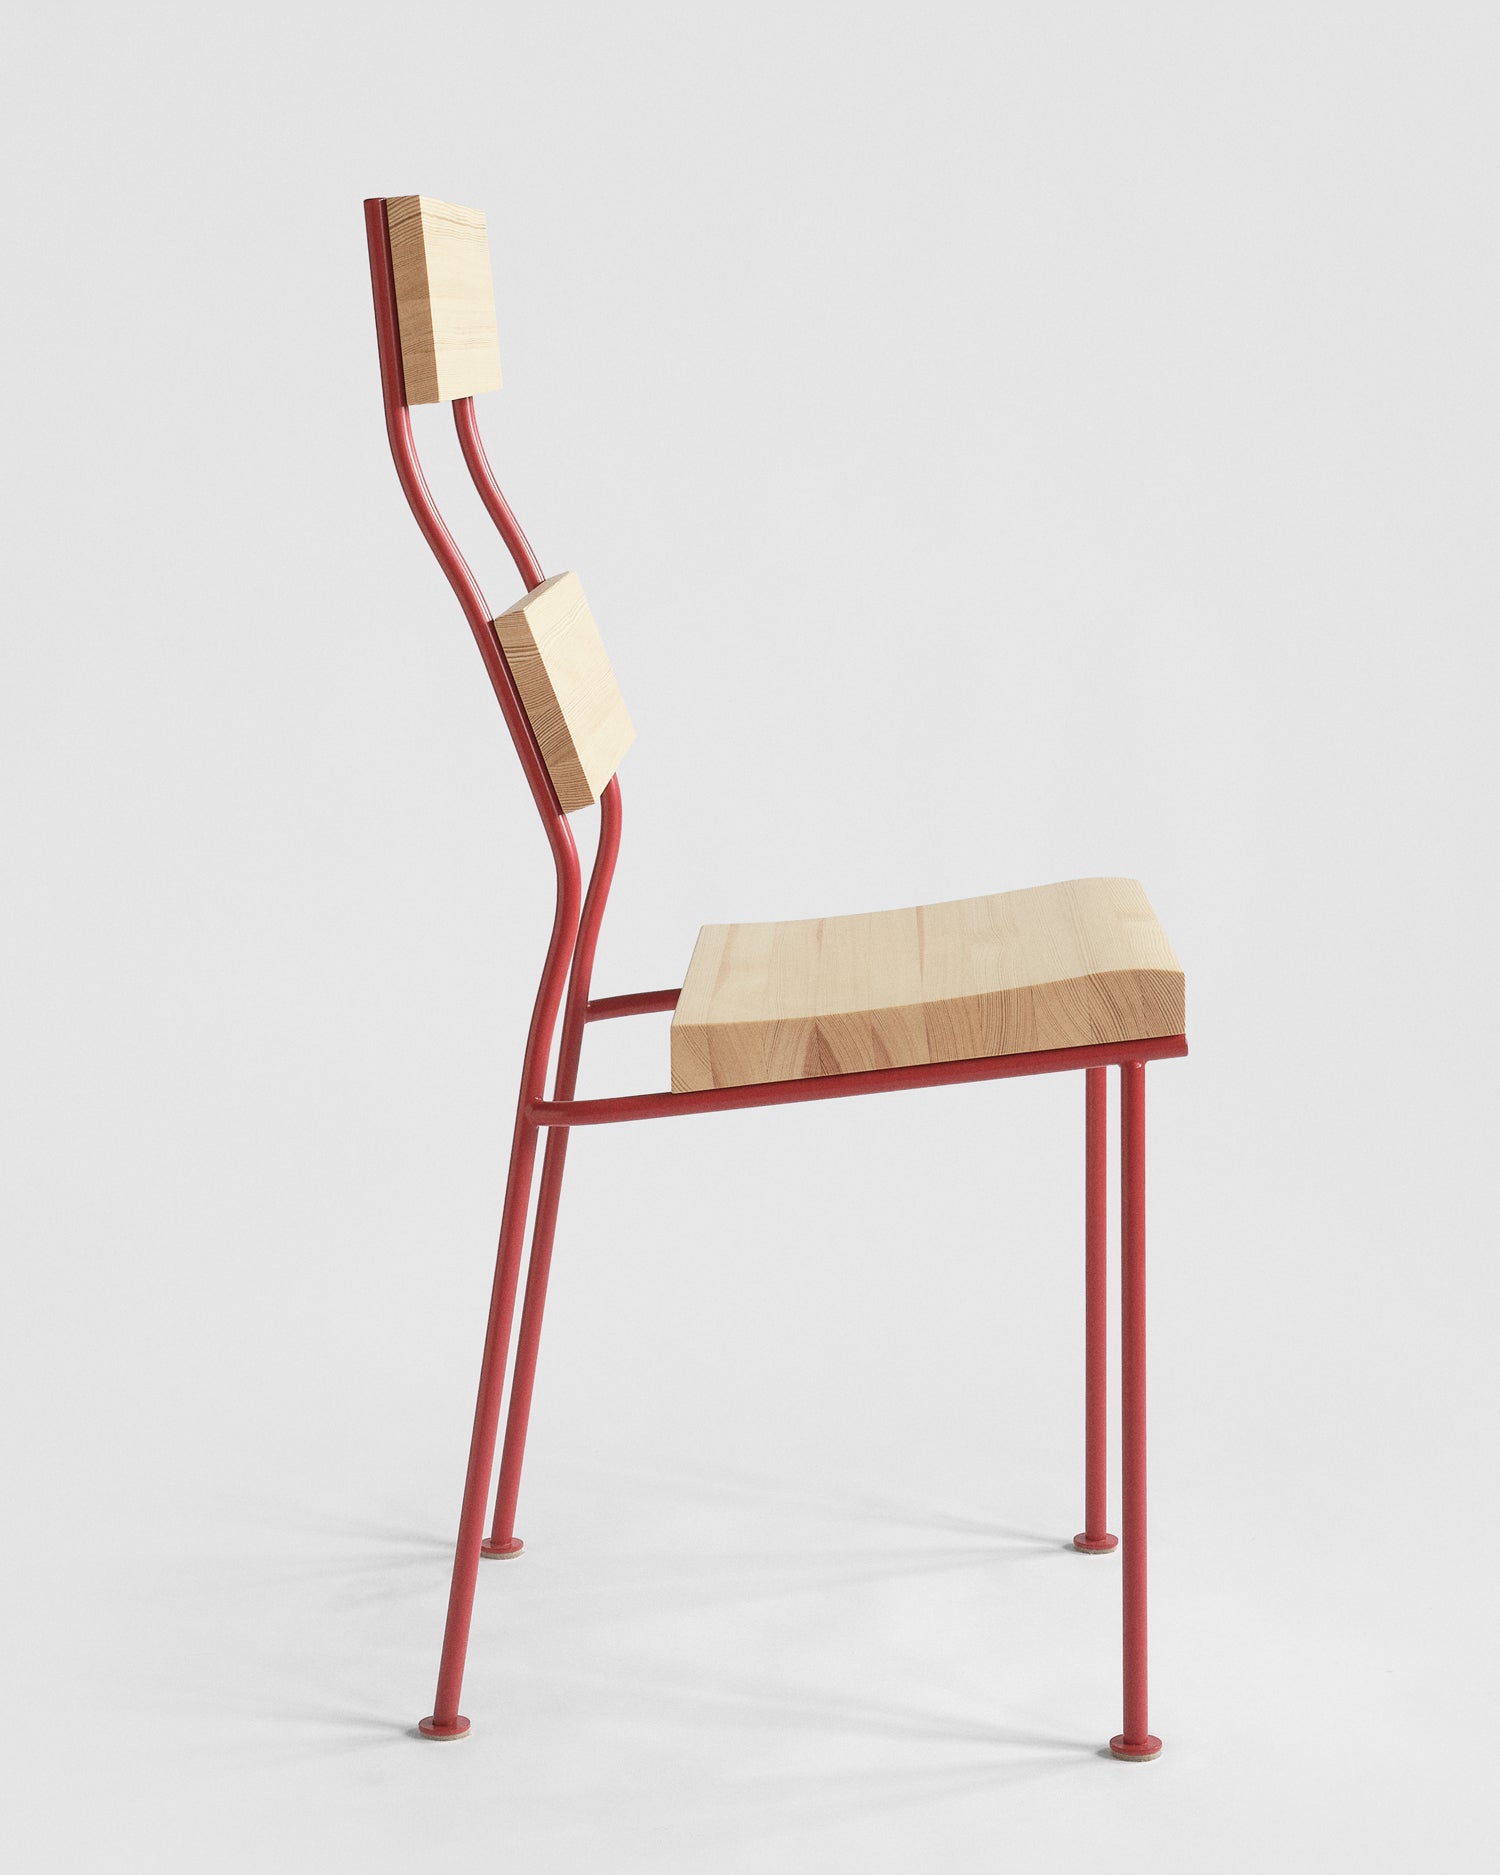 Töreboda Chair / Tomato Red